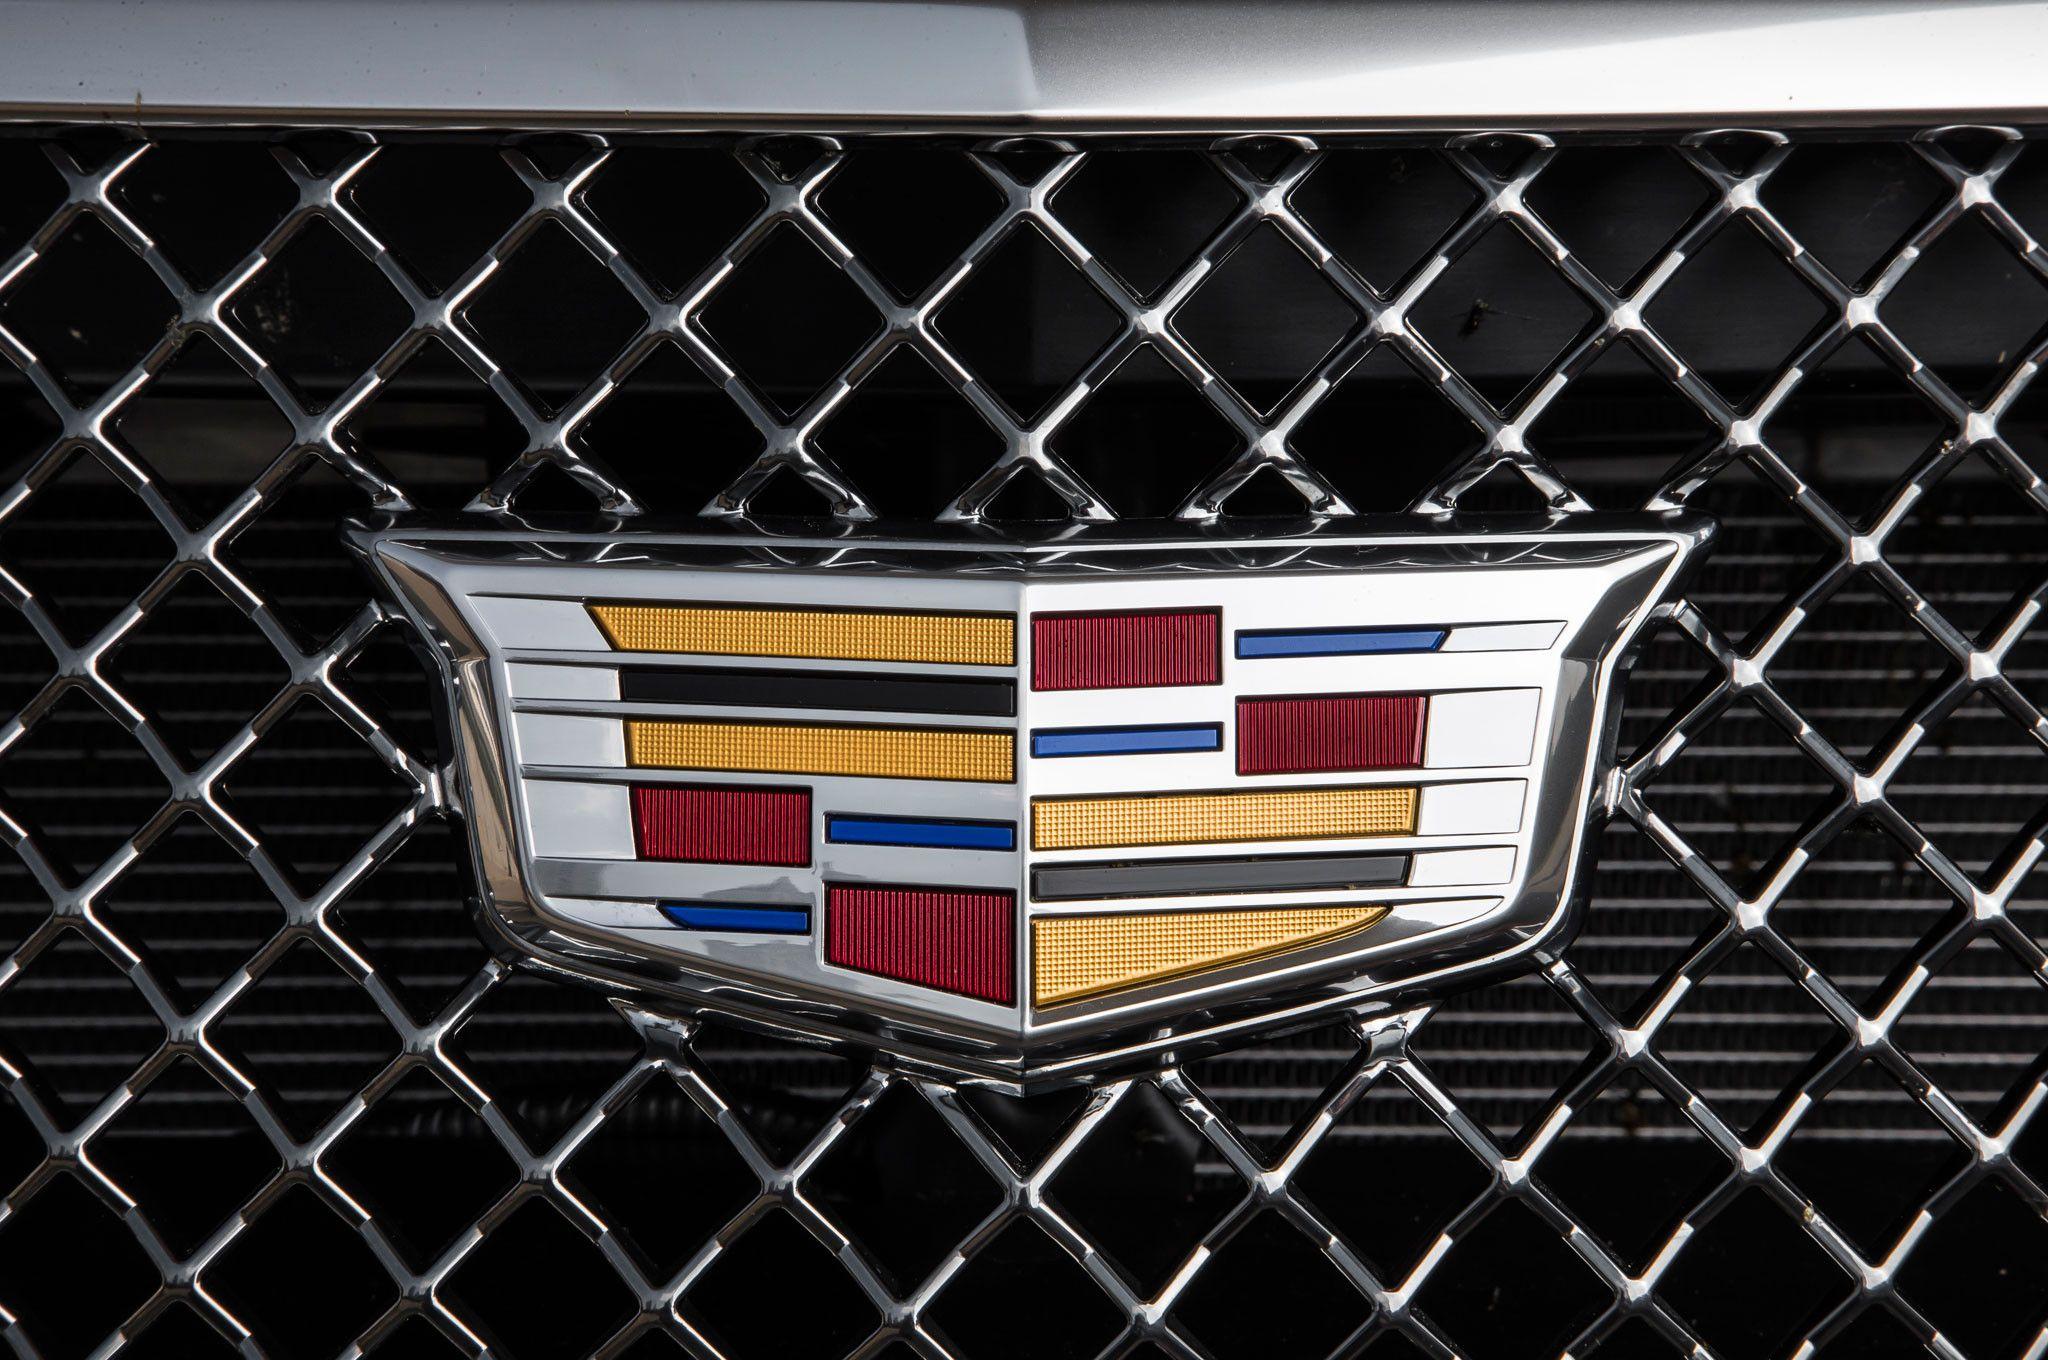 2016 New Cadillac Logo - Cadillac Cts V Logo New Alive and Kicking 2016 Cadillac Cts V Review ...